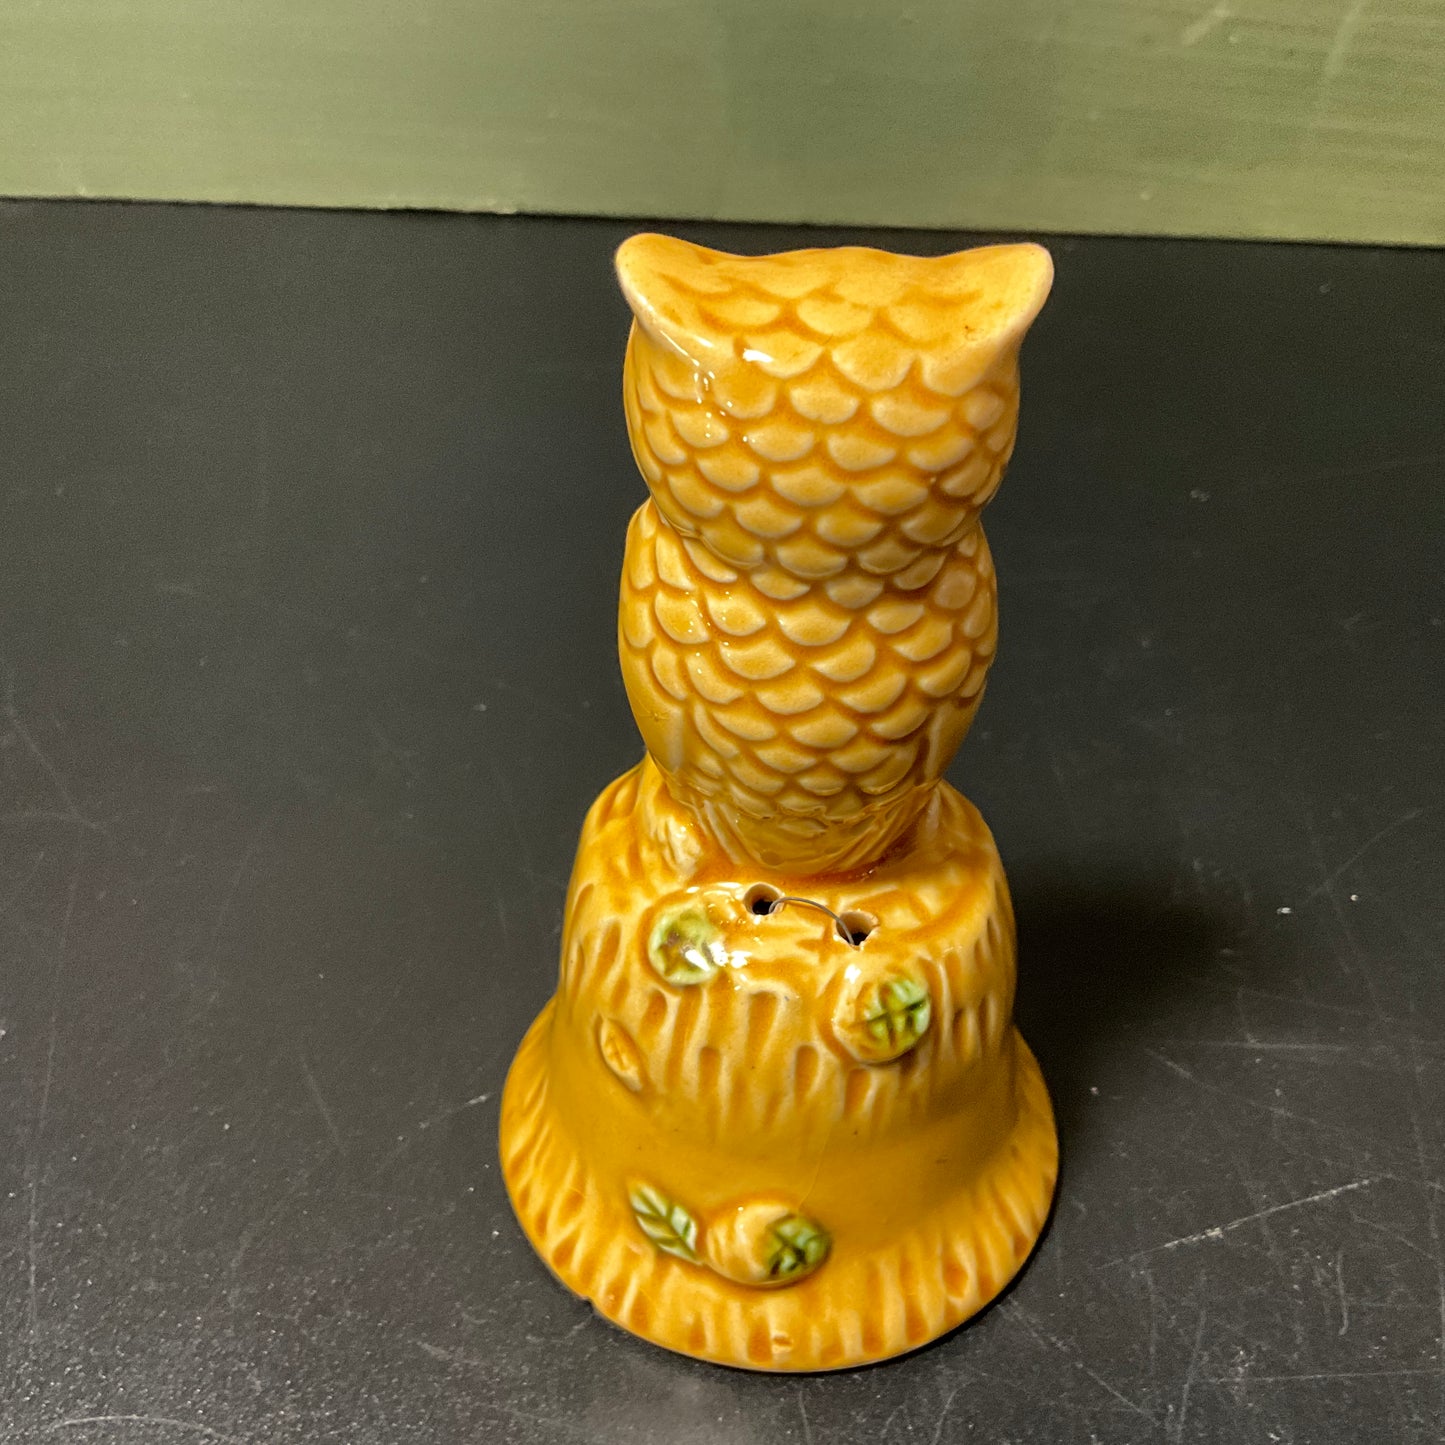 Night Owl Las Vegas porcelain bell vintage souvenir collectible